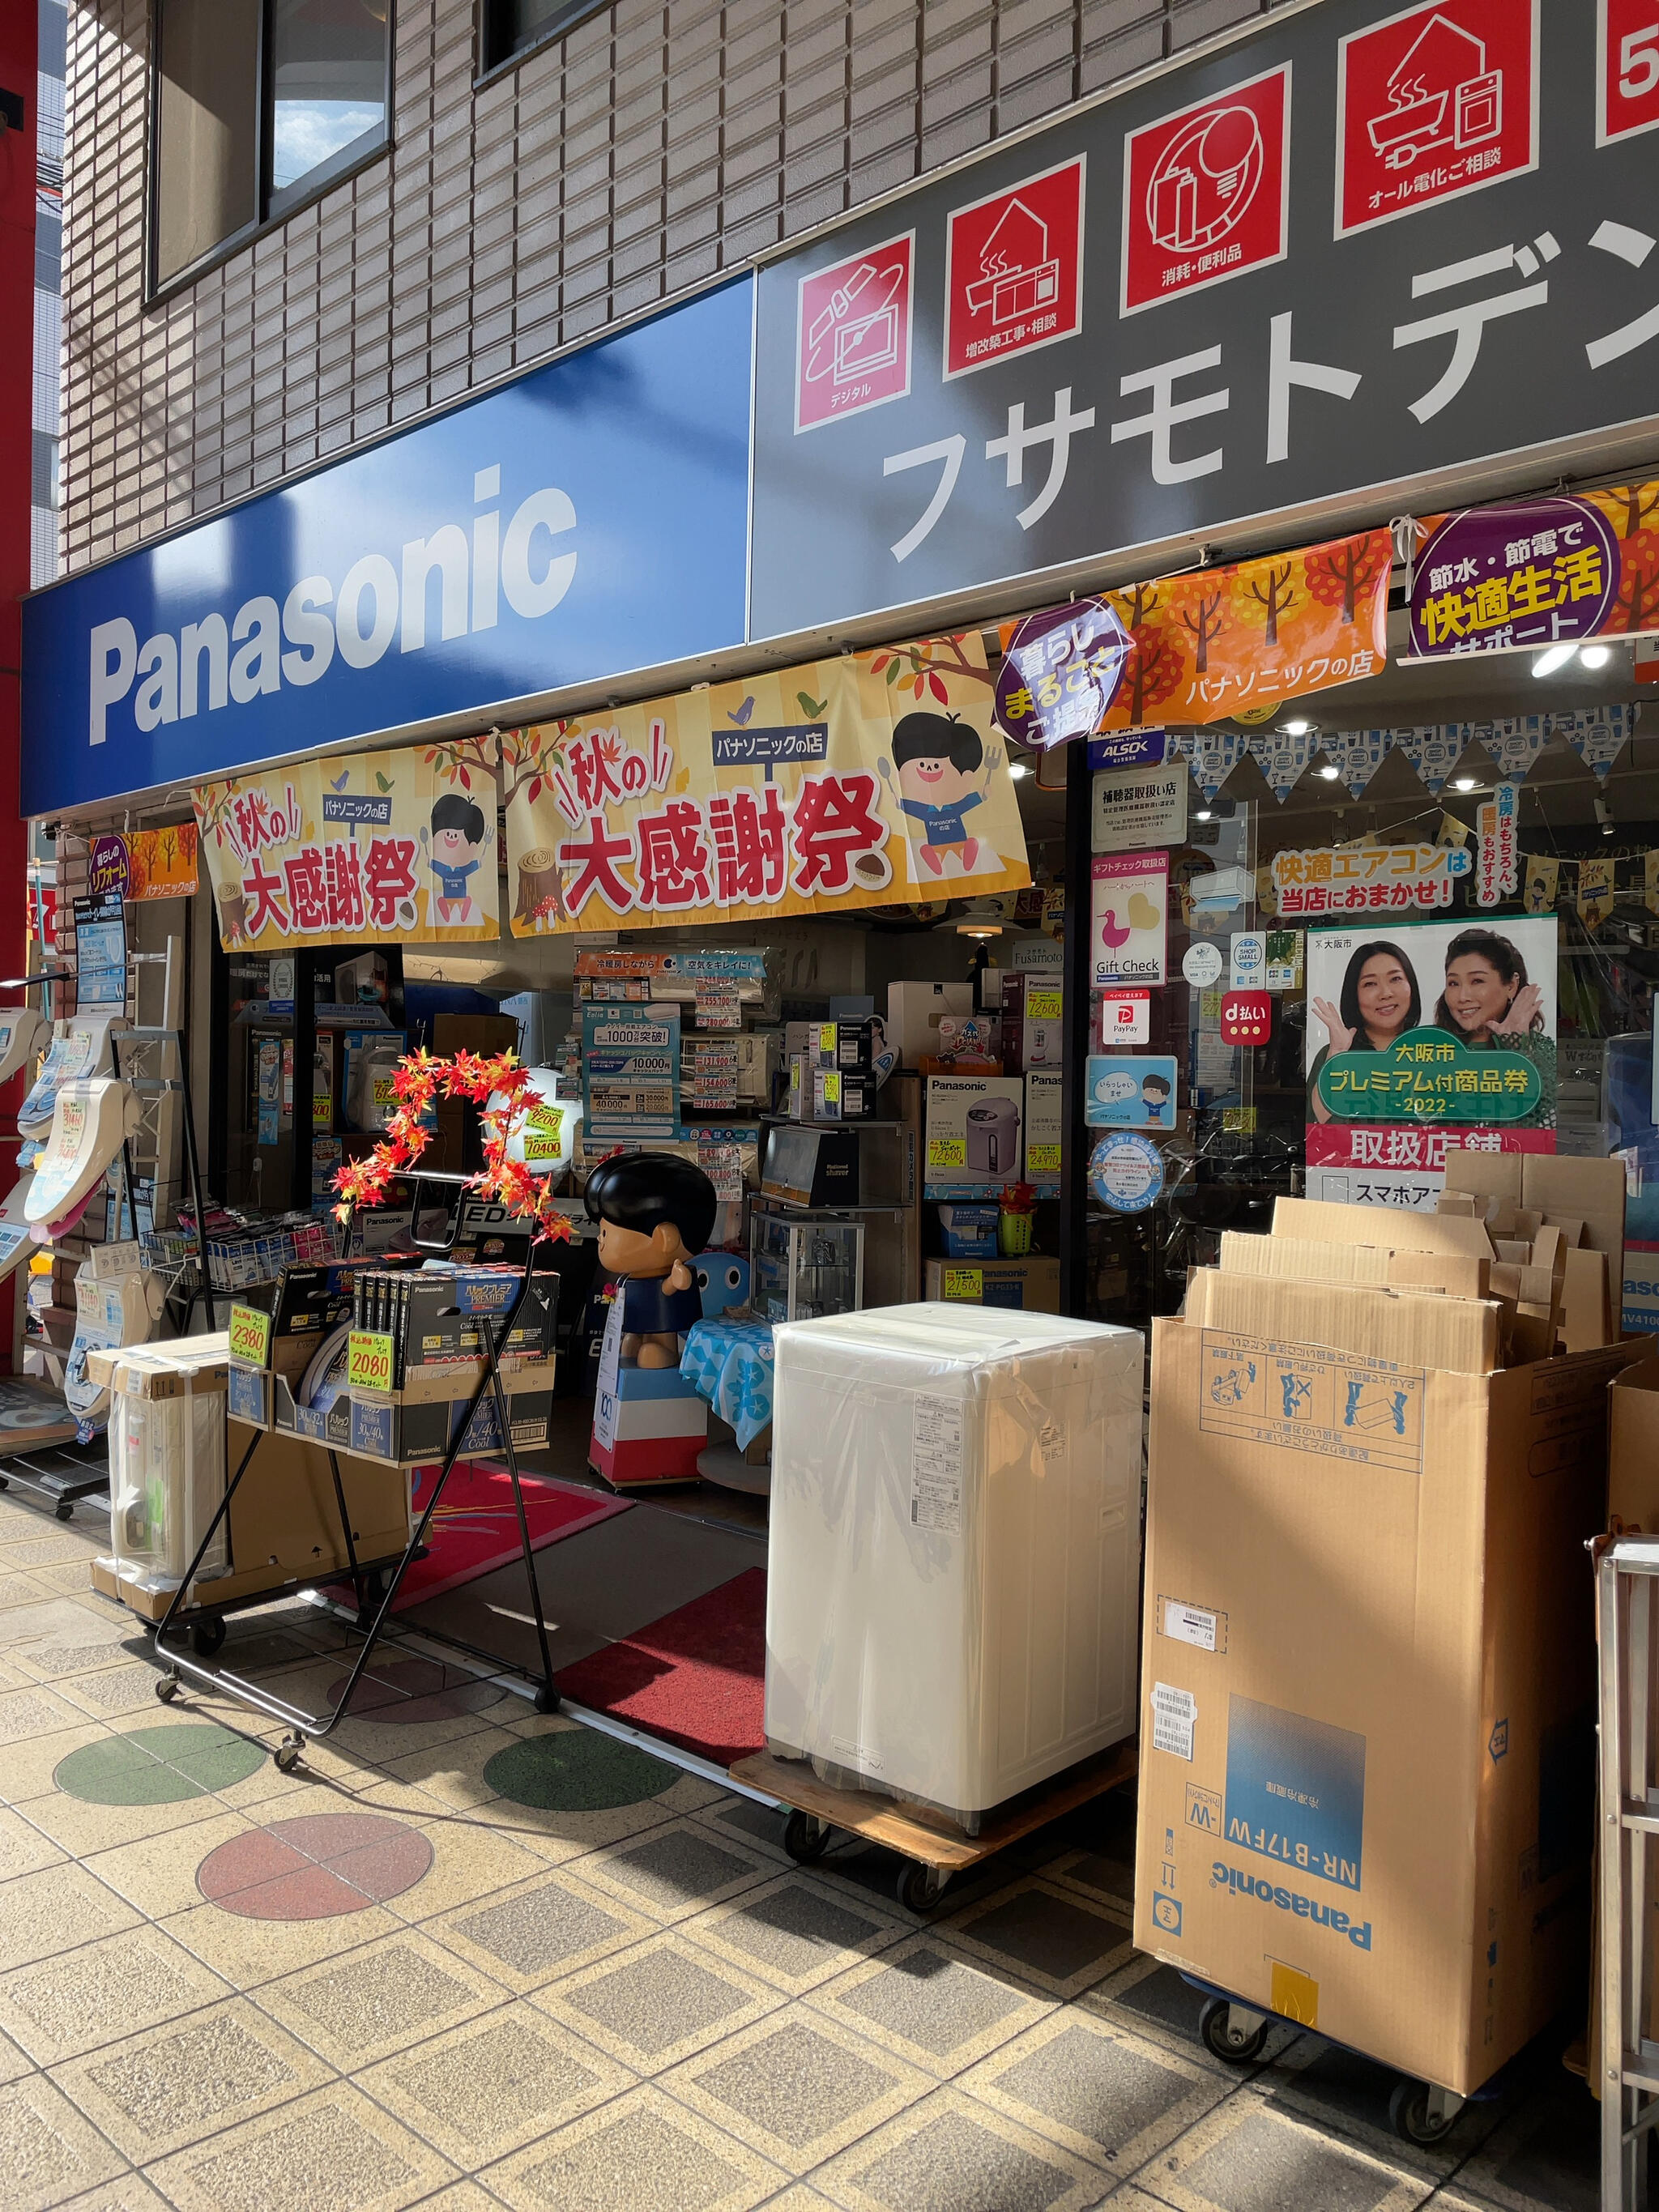 パナソニックの店 房本電化 - 大阪市東住吉区駒川/電器店 | Yahoo!マップ